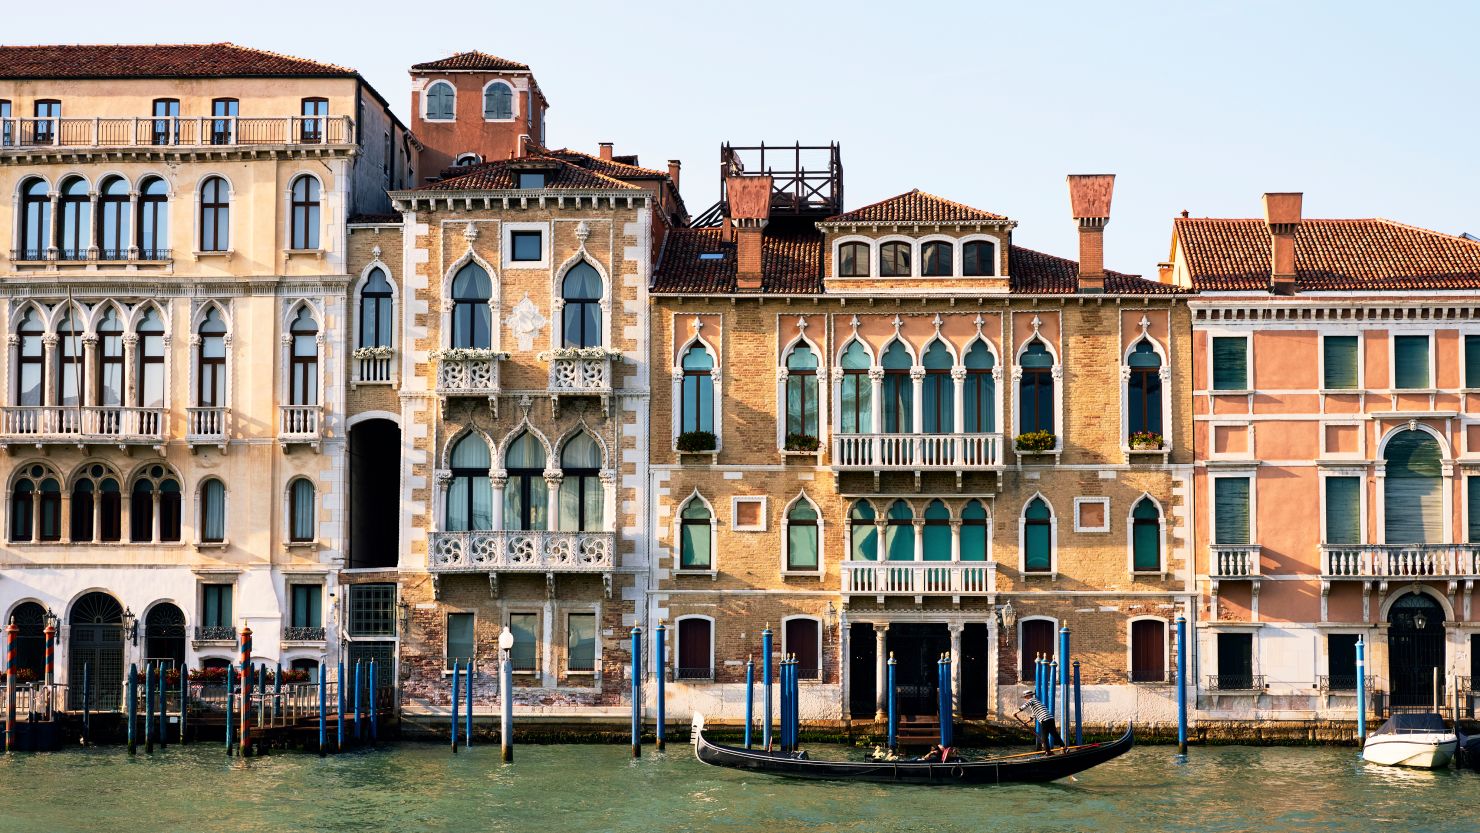 Italy, Veneto, Venice, Grand Canal with Gondola